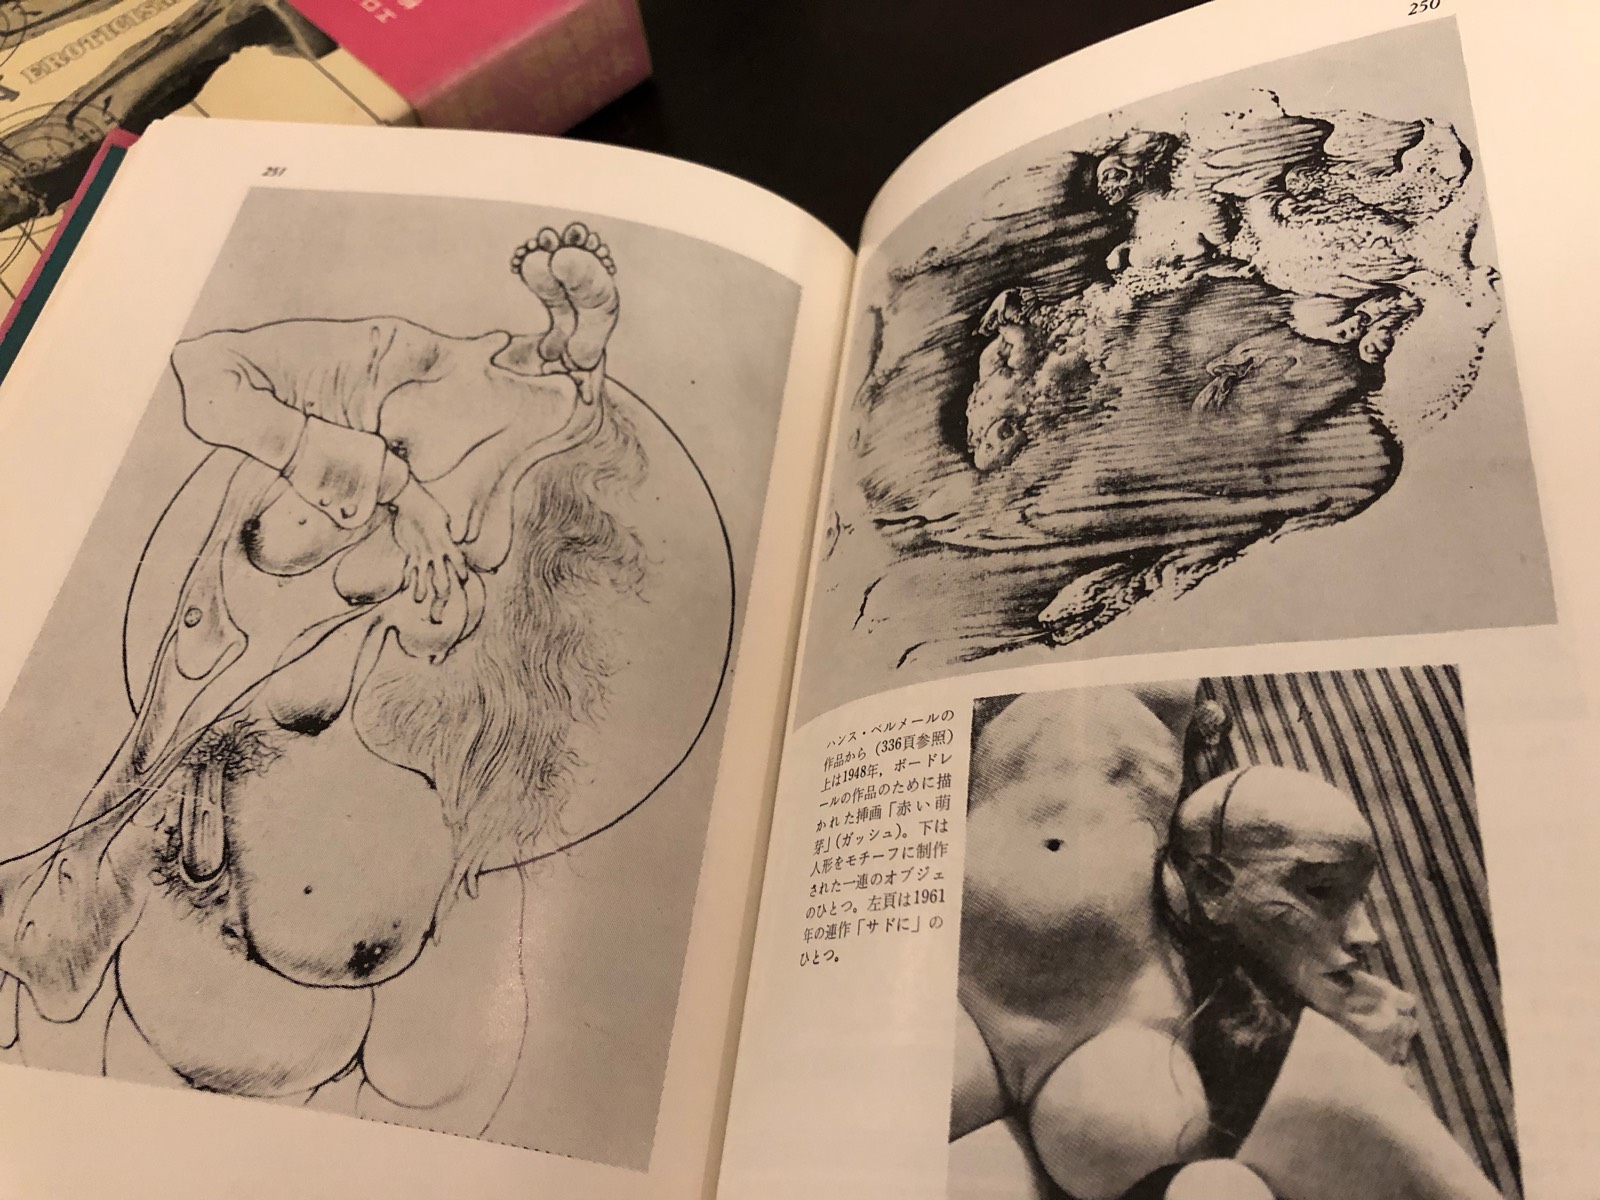 澁澤龍彦編集「エロティシズム」 1973年 青土社初版 函帯付き極美完本